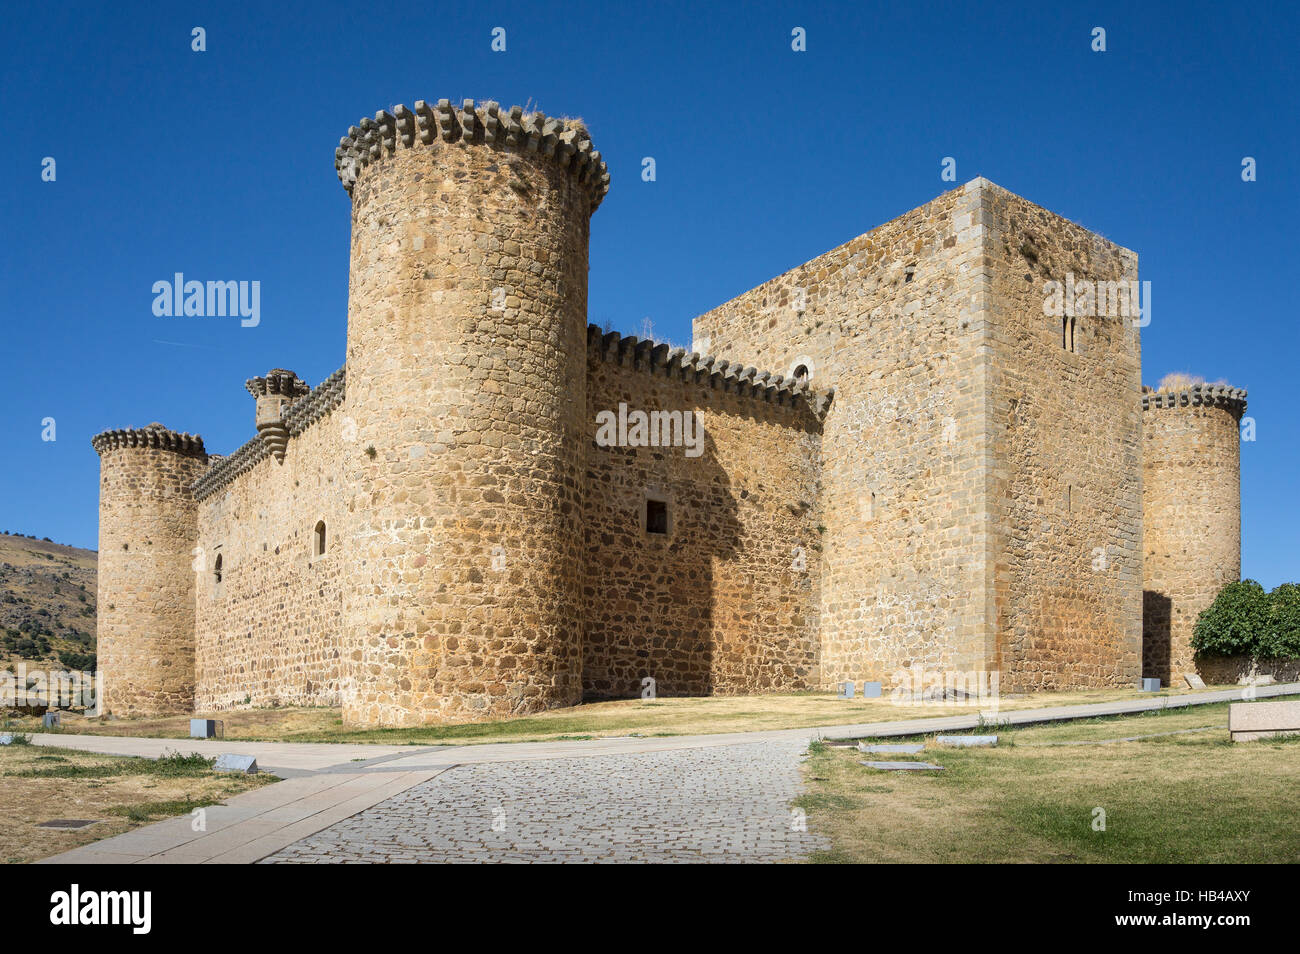 Valdecorneja castle at El Barco De Avila, Avila Province, Spain. Stock Photo